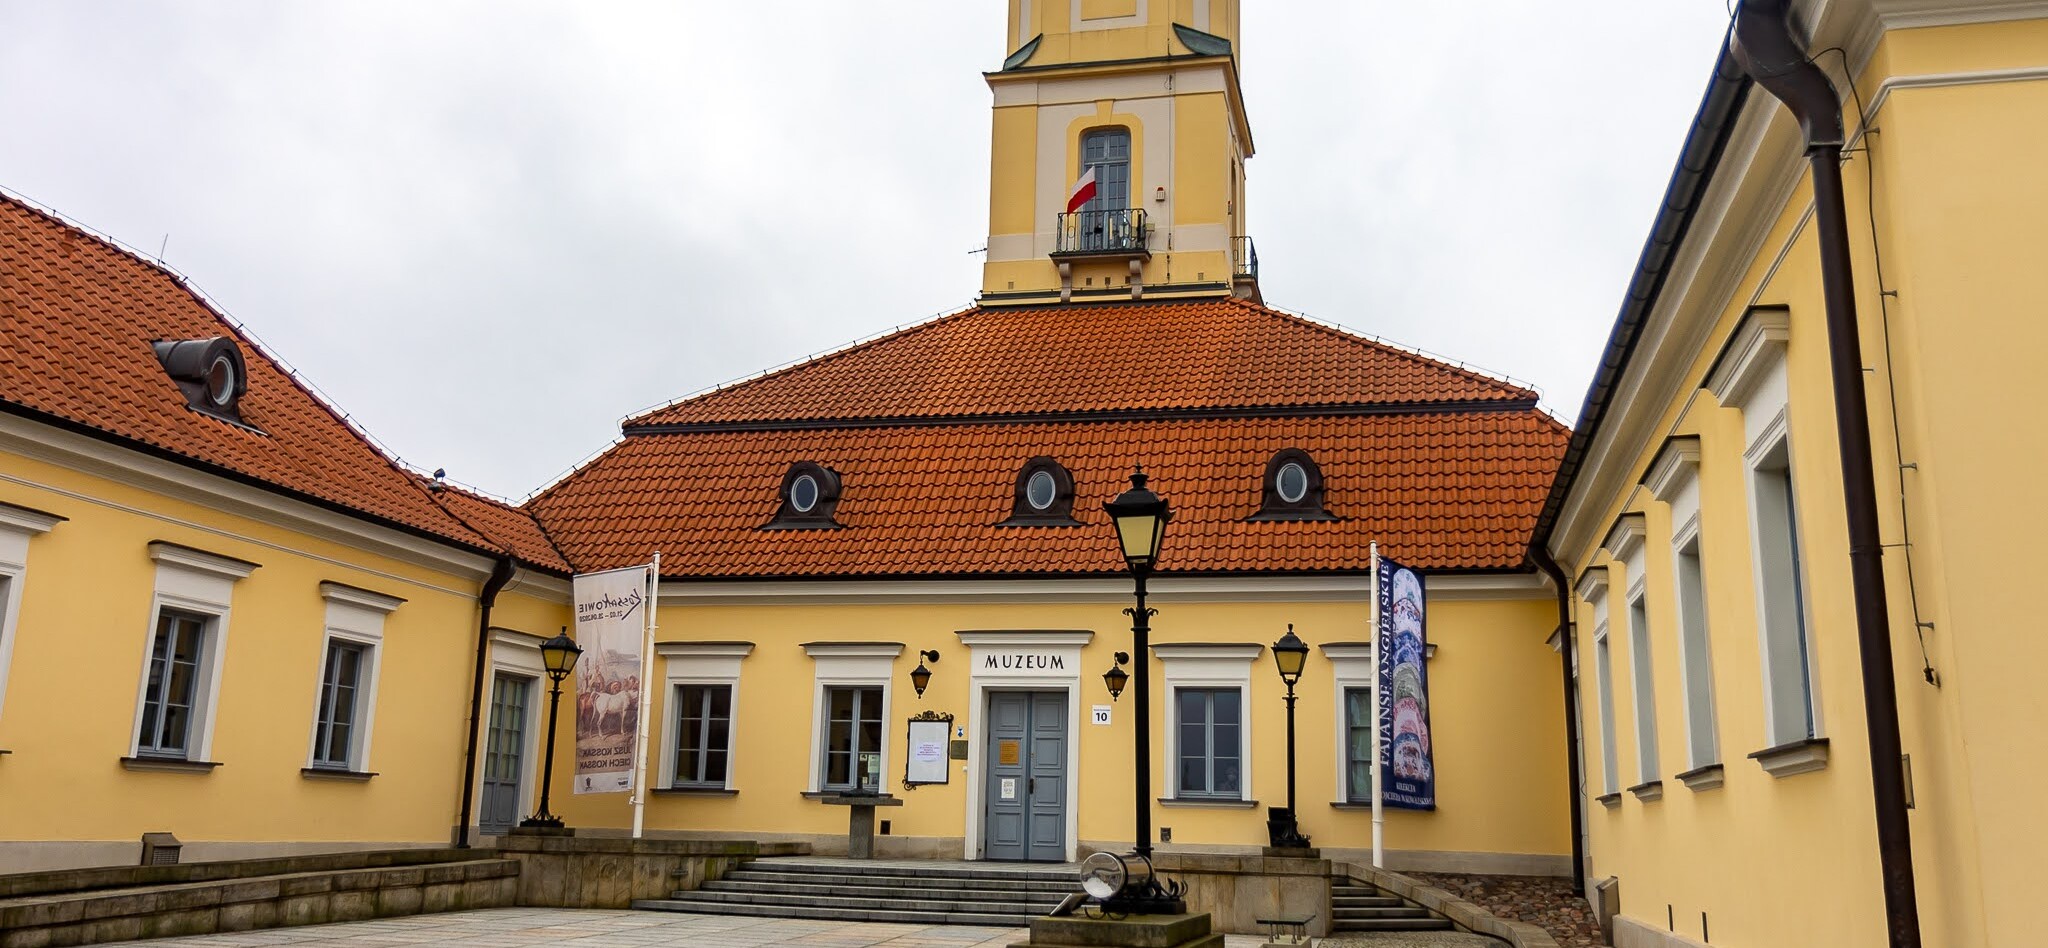 Siedziba Muzeum Podlaskiego. Zabytkowy budynek ratusza miejskiego.